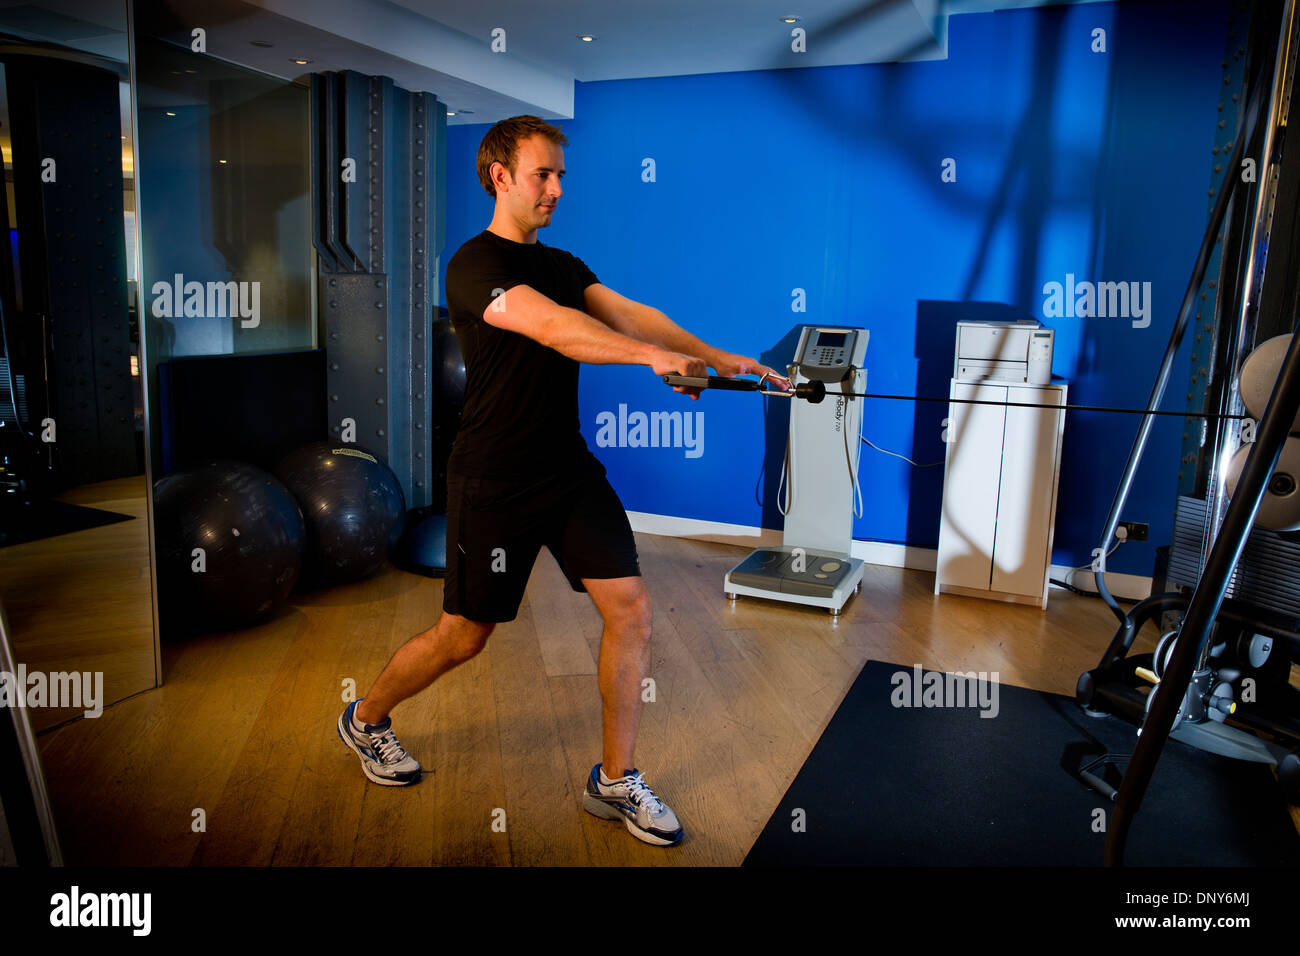 Gary Hicking, Personaltrainer in London, UK, halten fit mit Core-Oberkörper-Training mit Gewichten und pully system Stockfoto